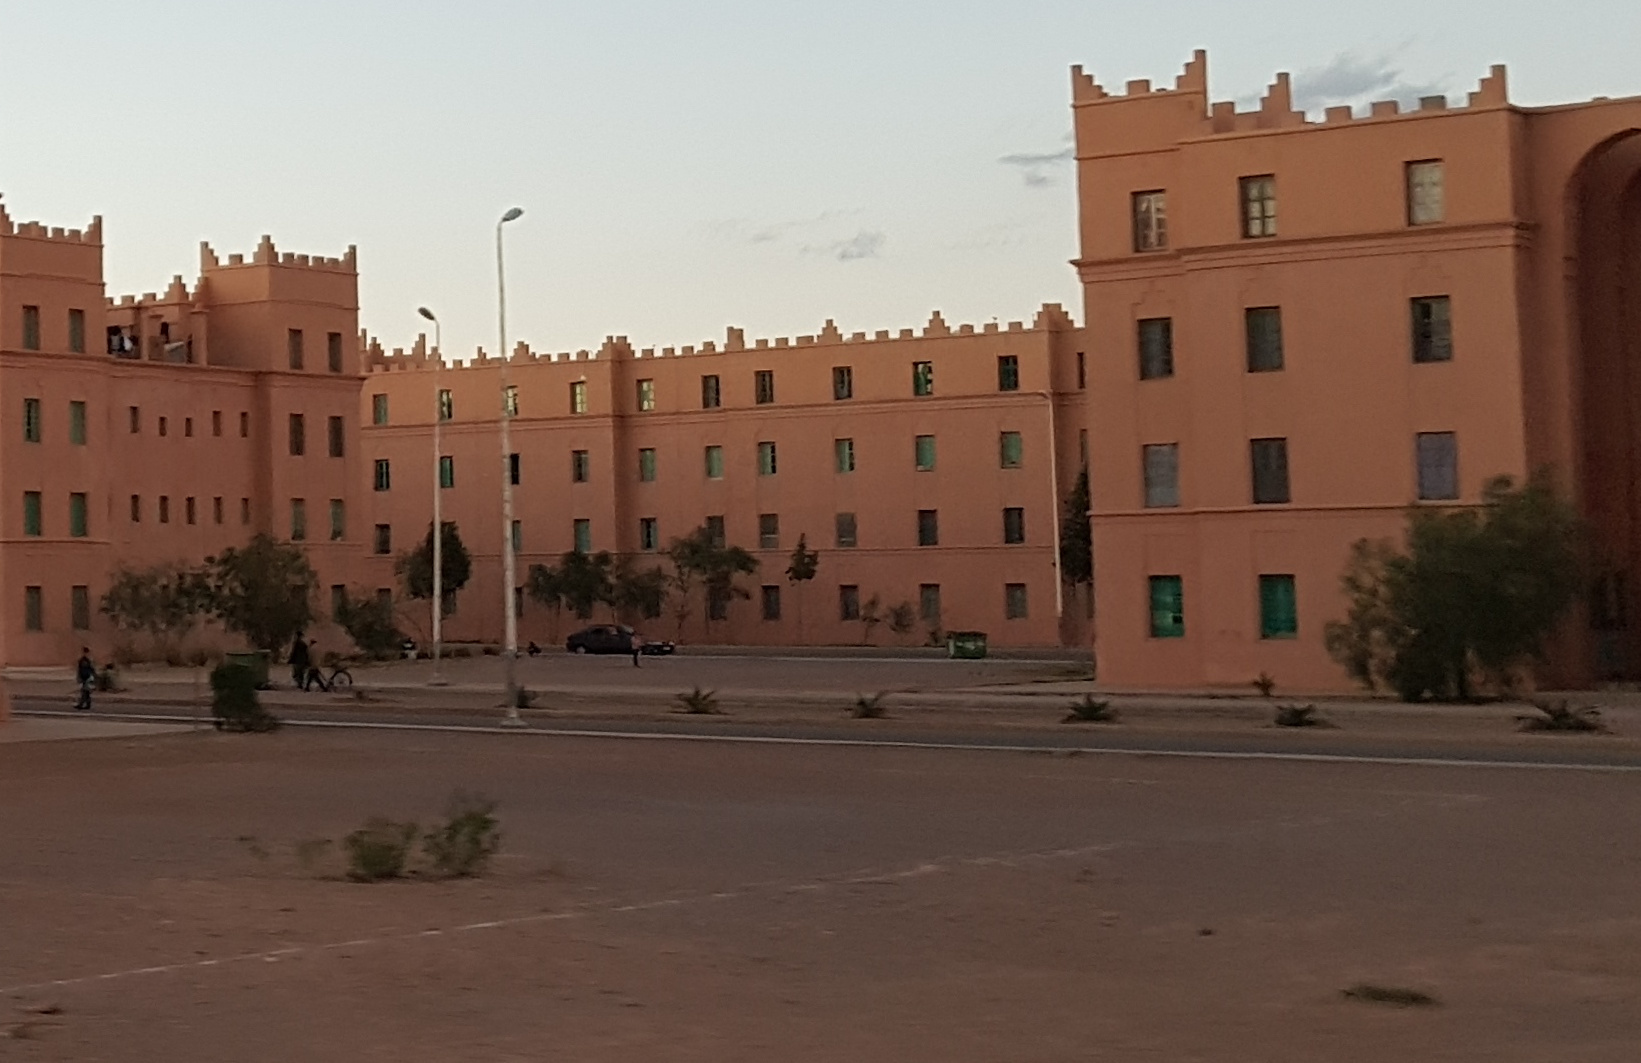 20180310-183320-Ouarzazate-SJ-2.jpg